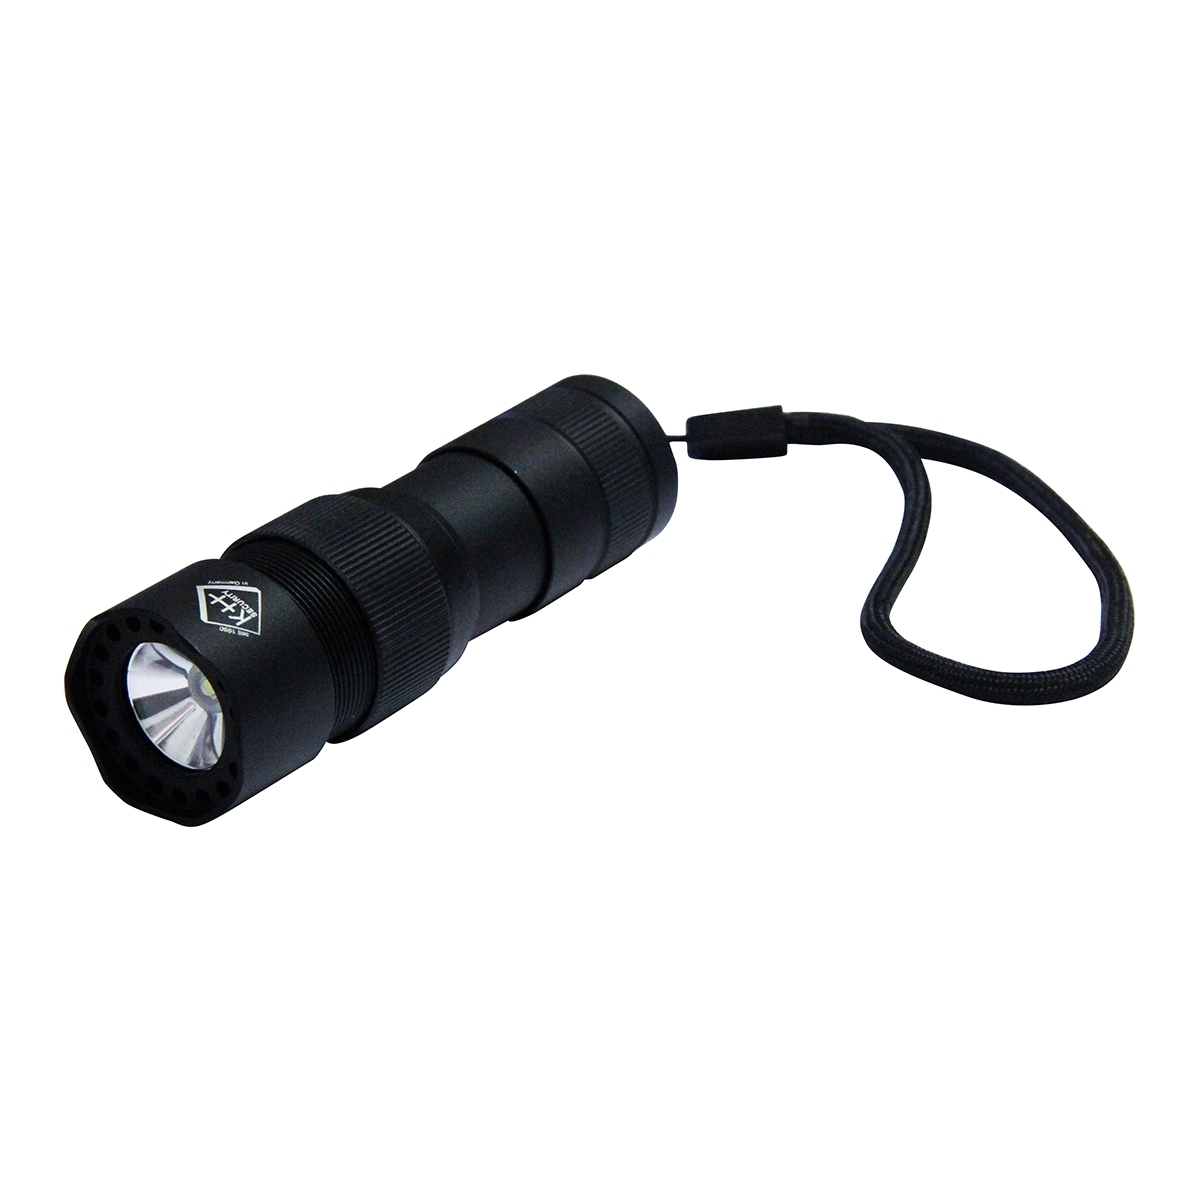 Taschenlampe Pro Alarm